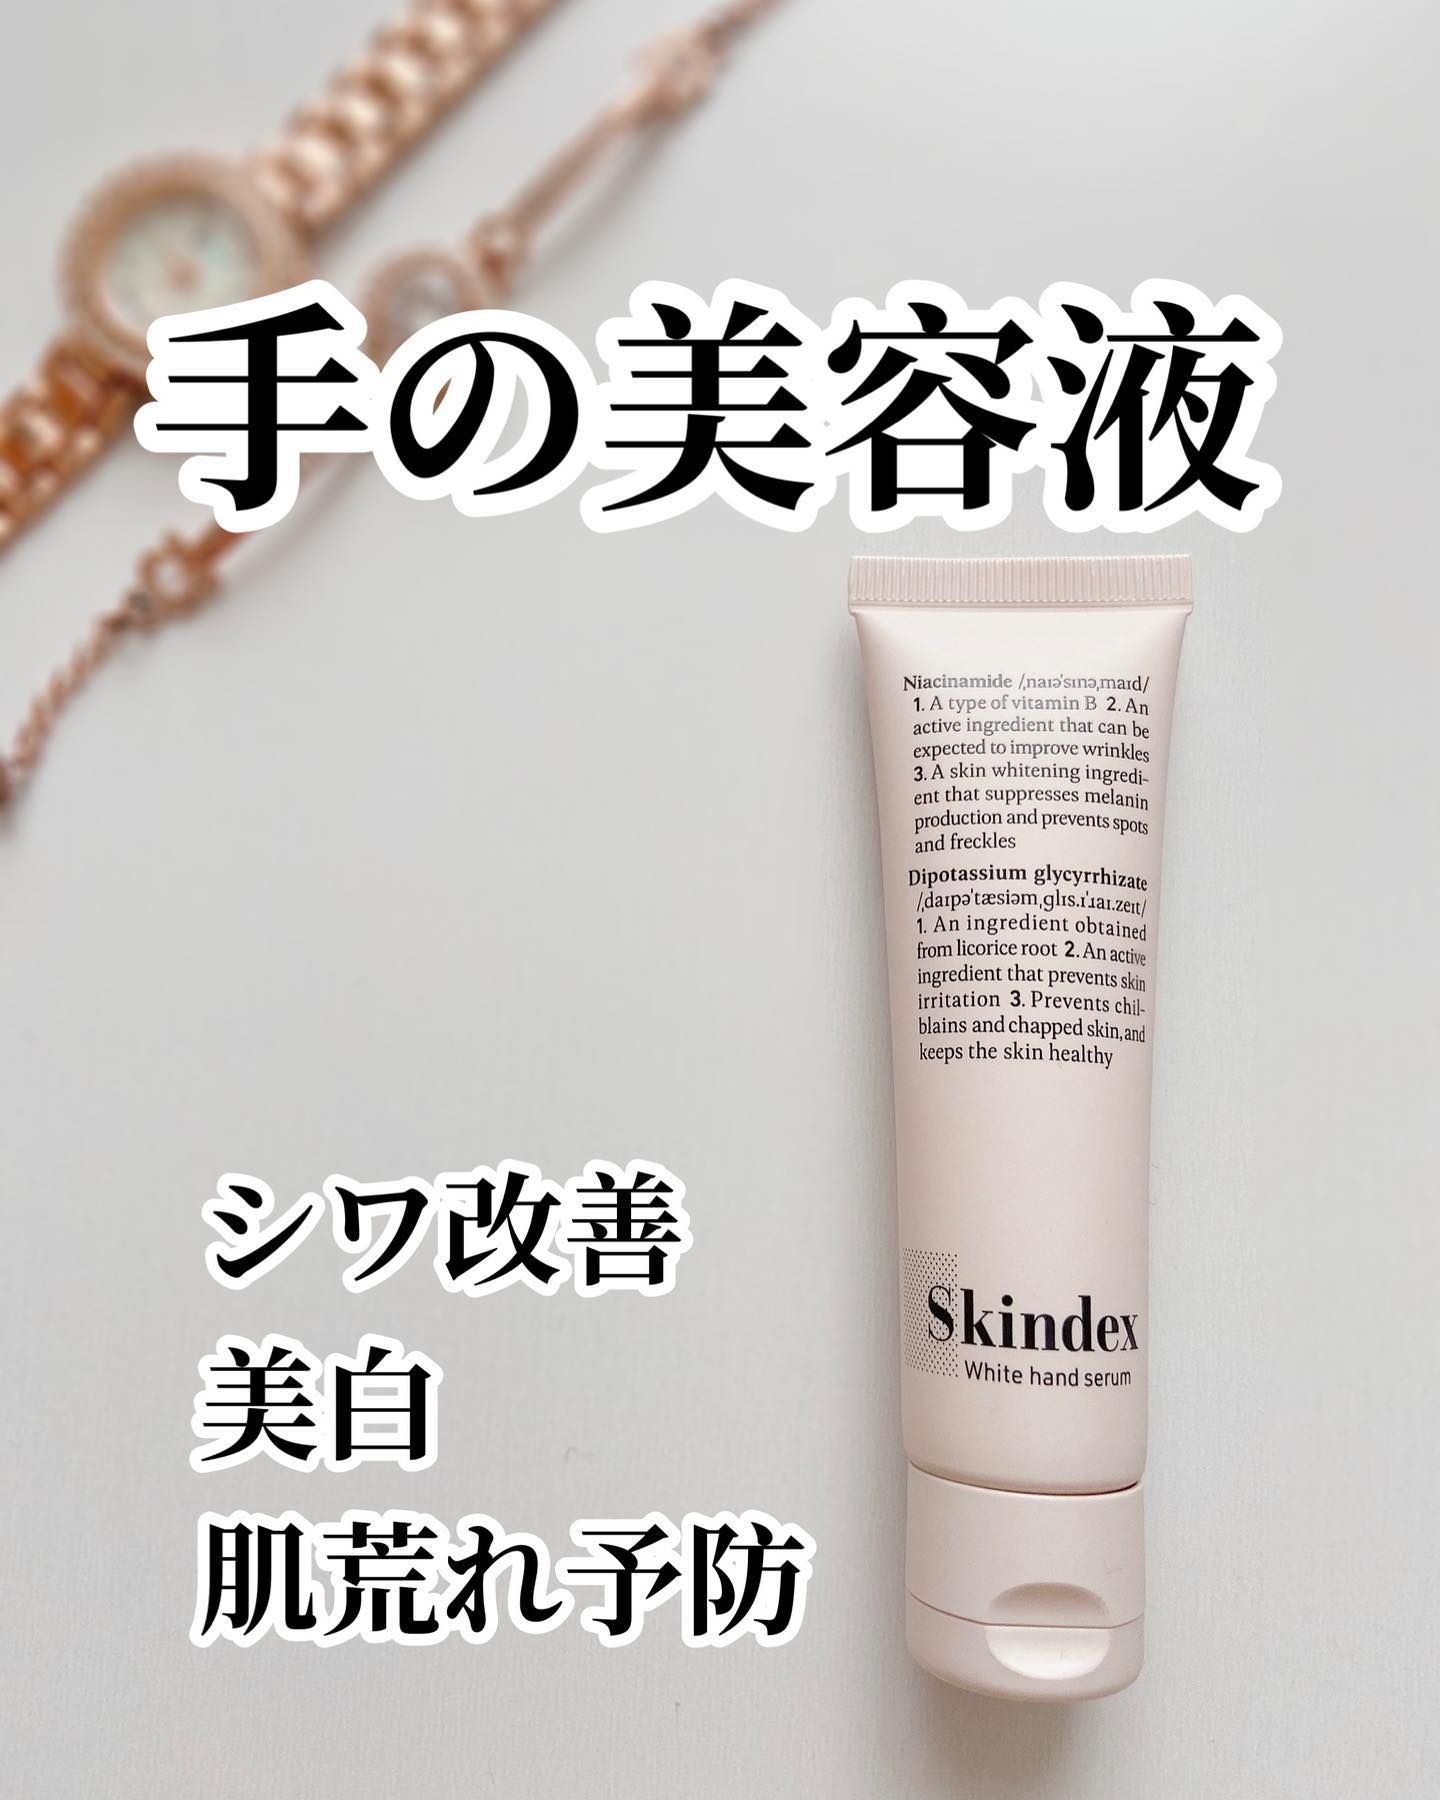 口コミ投稿：.♡@skindex_jp 『シワ改善』『美白』『抗炎症』を叶えるハンド美容液のご紹介。...☆…